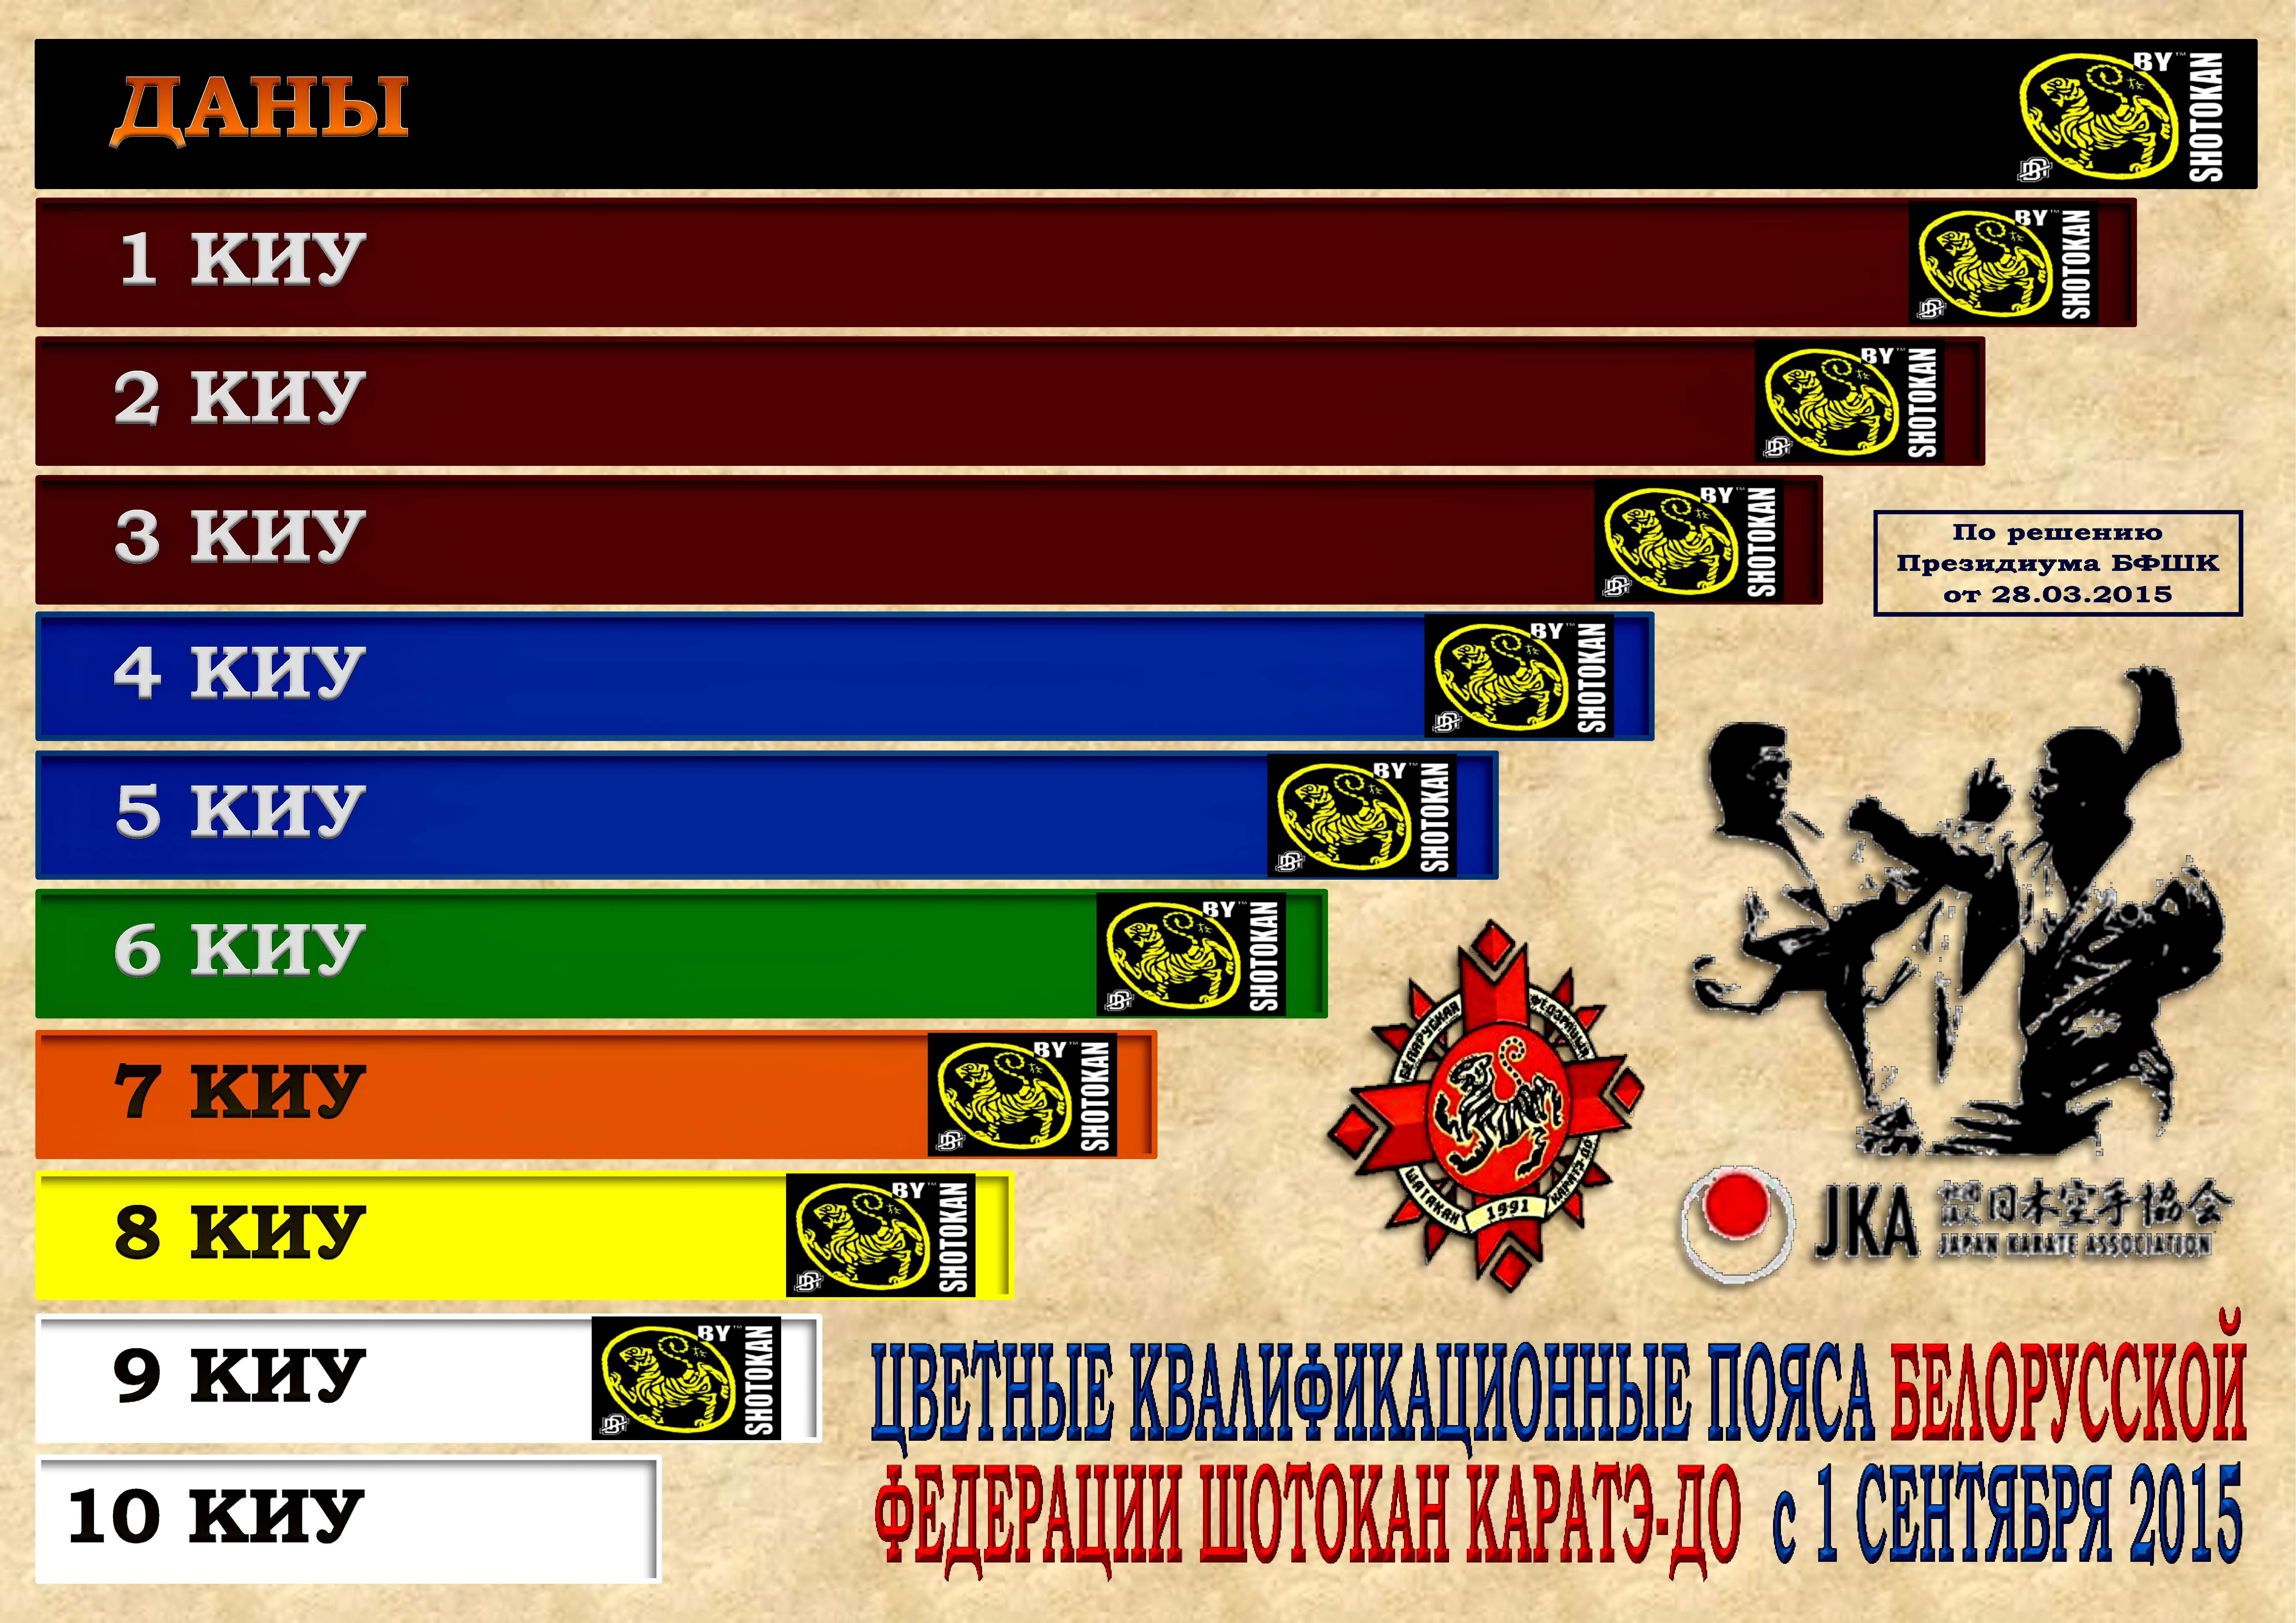 Цветные пояса БФШК с 09-2015